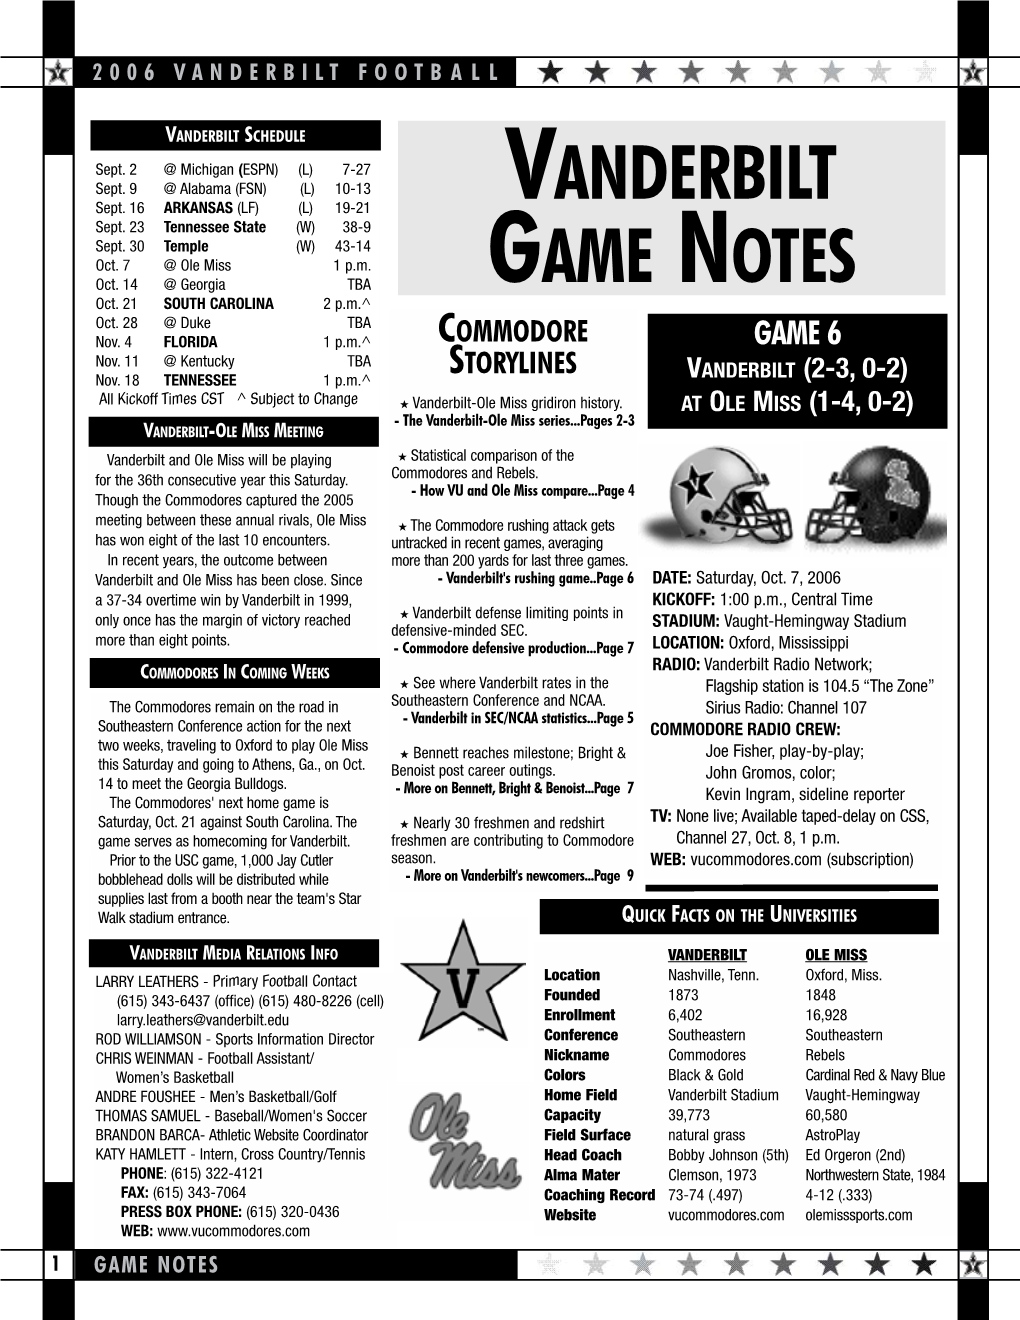 Vanderbilt Game Notes